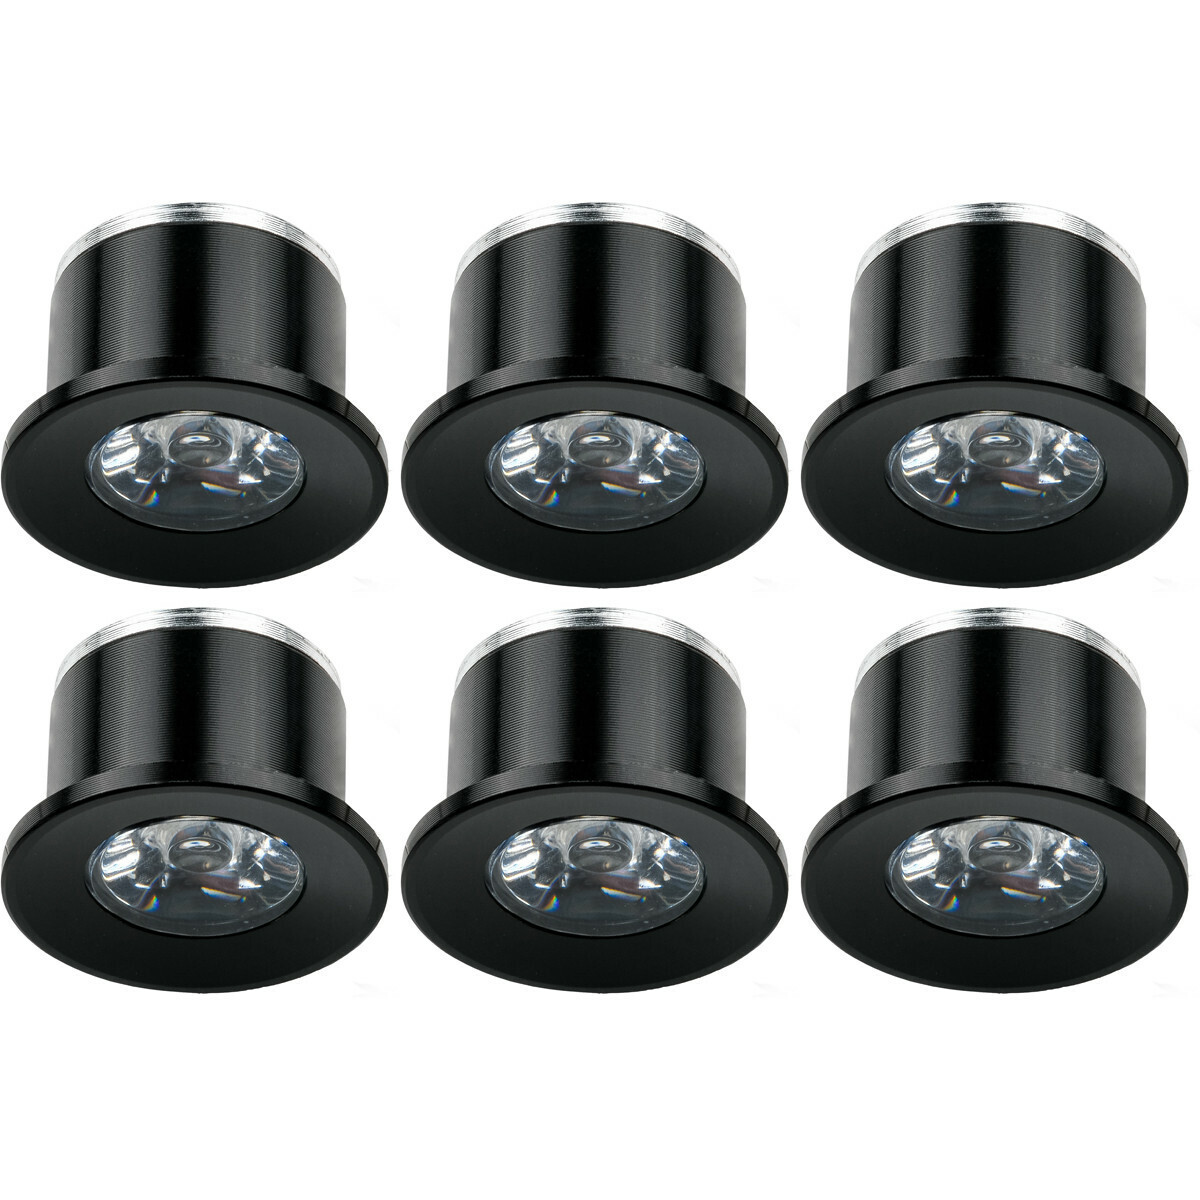 Velvalux Voordeelpak LED Veranda Spot Verlichting 6 Pack - 1W - Warm Wit 3000K - Inbouw - Dimbaar - Rond - Mat Zwart - Aluminium - Ø31mm